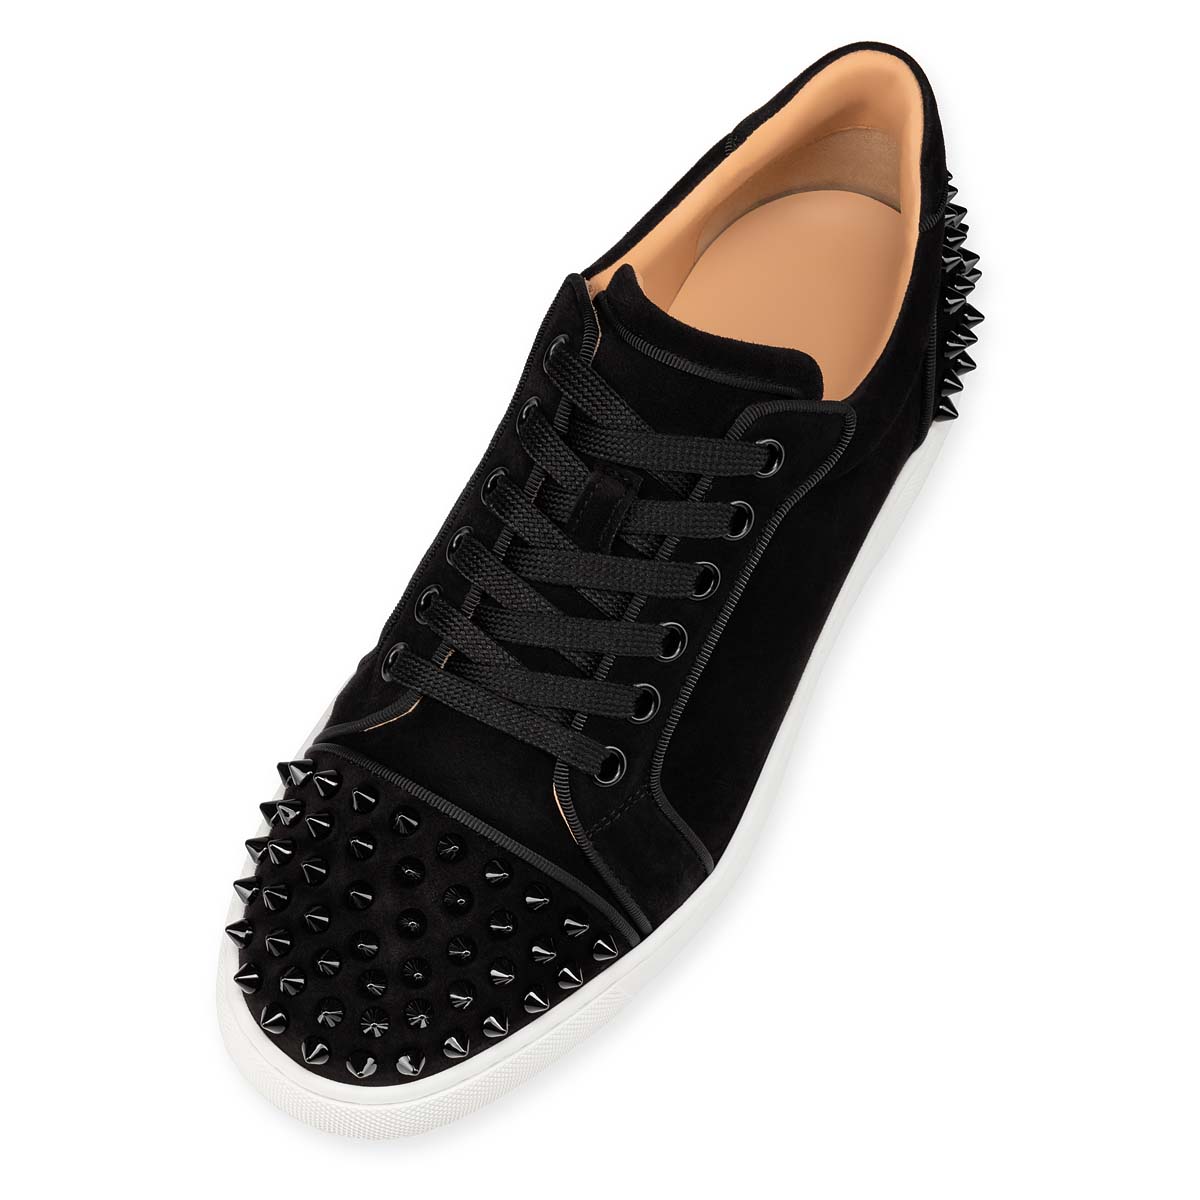 Christian Louboutin Vieira Spikes Black - Womens Shoes - Size 40.5